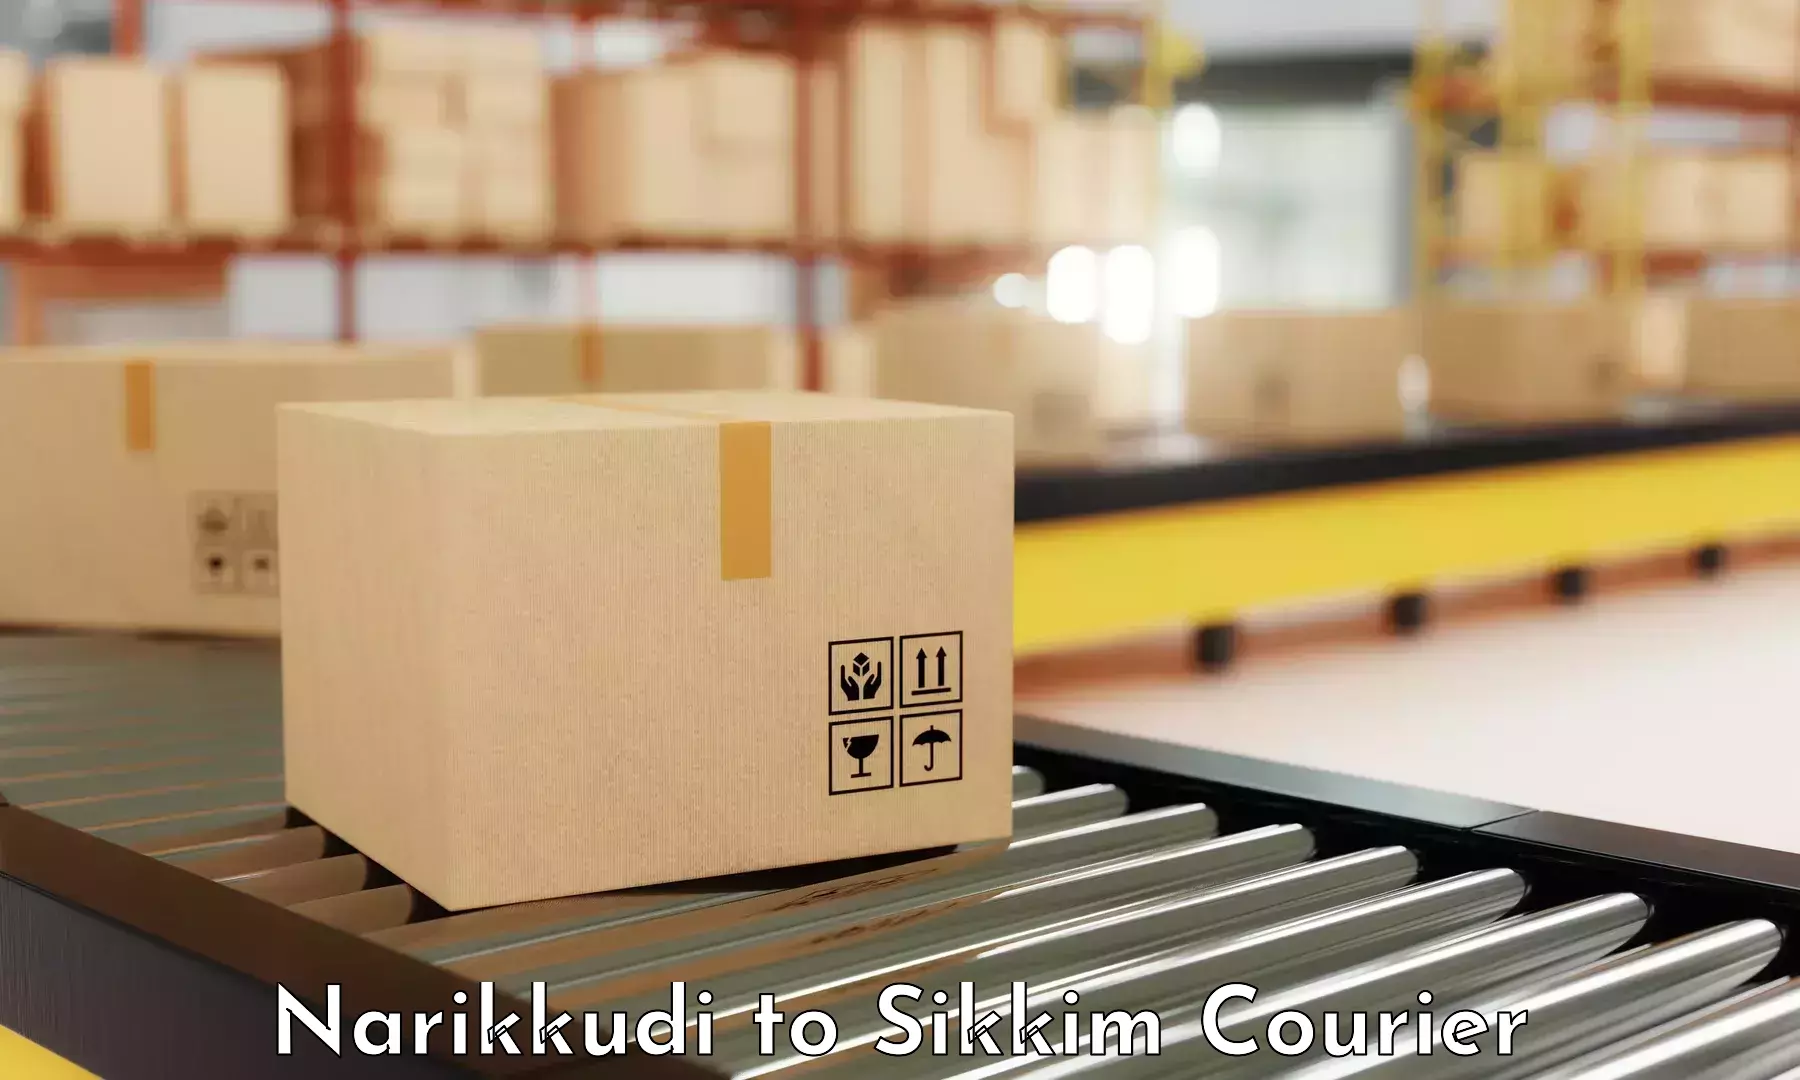 Online package tracking Narikkudi to Singtam